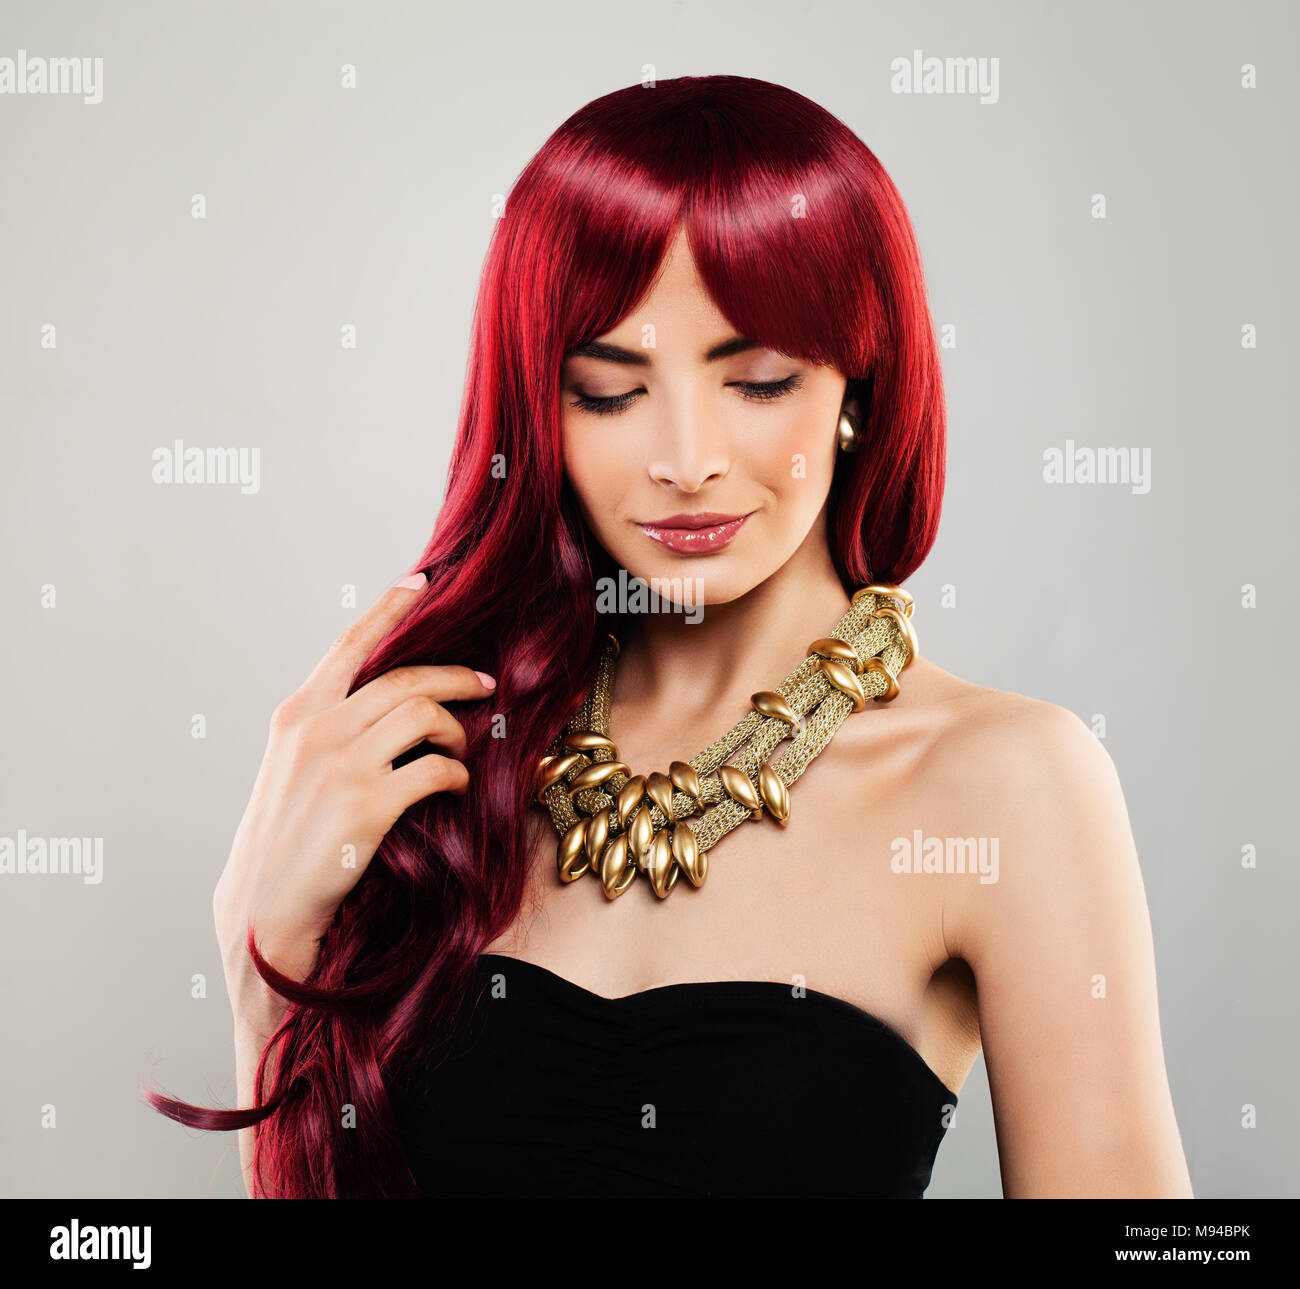 Redhead glamour femme modèle rouge avec les cheveux bouclés. Belle fille, joli visage de femme Banque D'Images